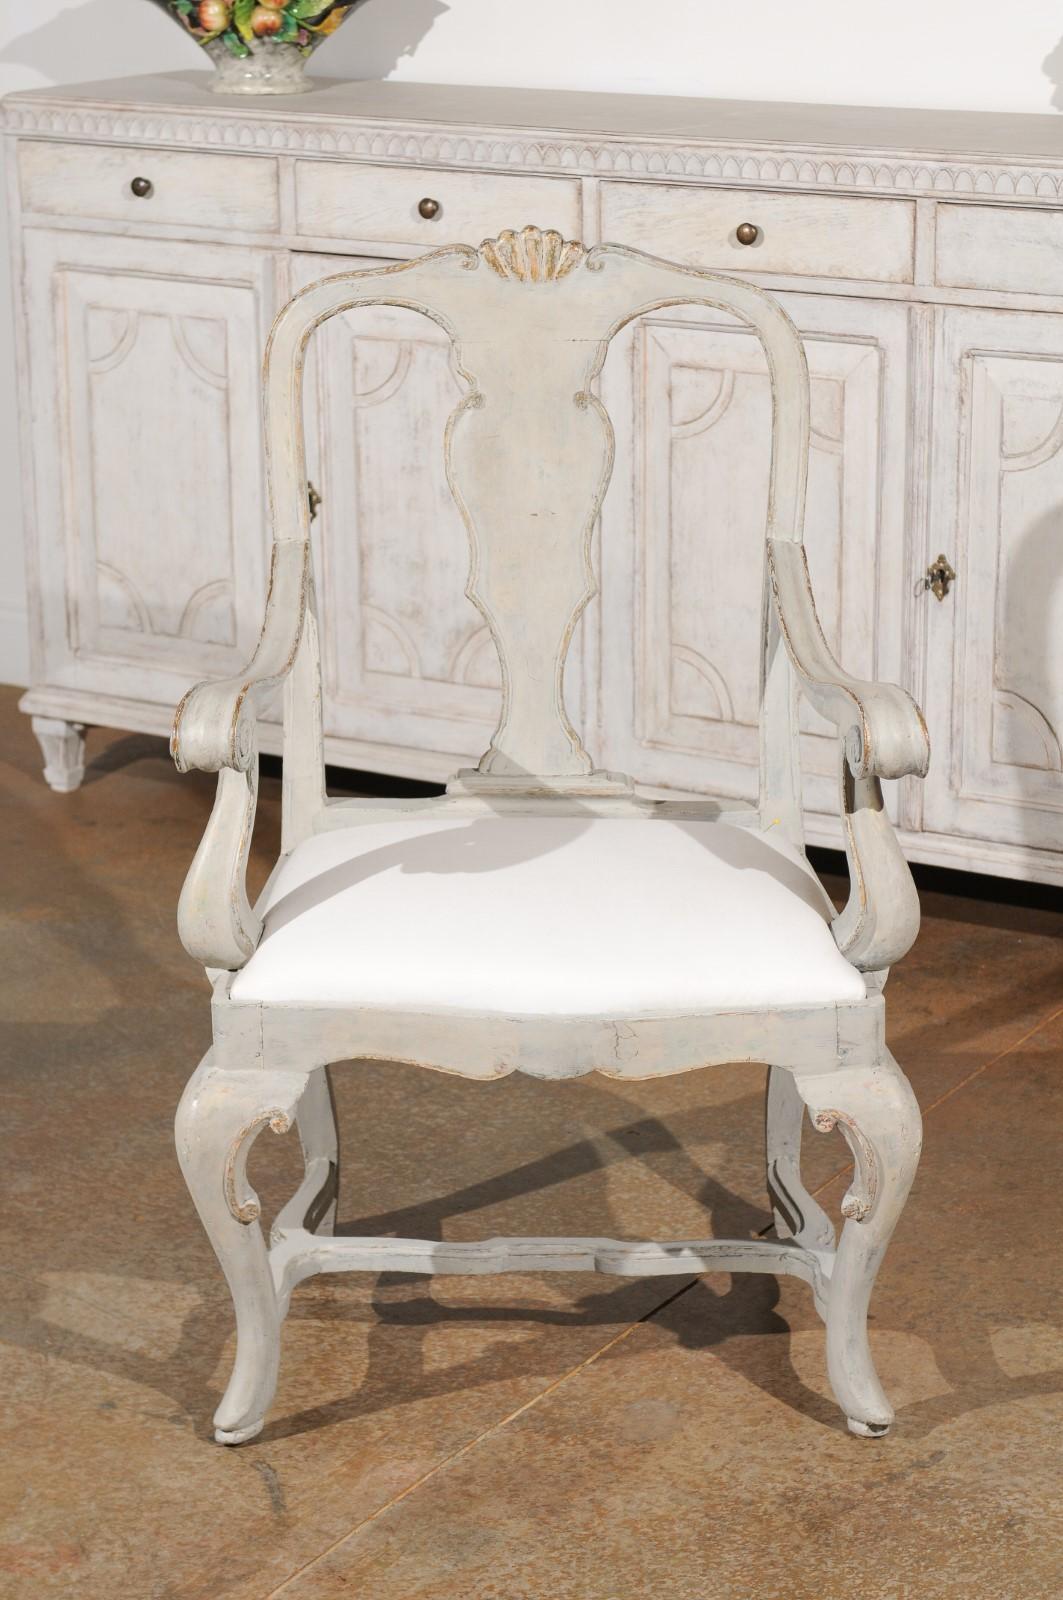 Ein italienischer Rokokosessel aus bemaltem Holz aus dem frühen 19. Jahrhundert, mit geschnitztem Sims, geschwungenen Armlehnen, Cabriolehnen und Kreuzstrebe. Dieser exquisite, bemalte Sessel, der in den ersten Jahren des 19. Jahrhunderts in Venedig